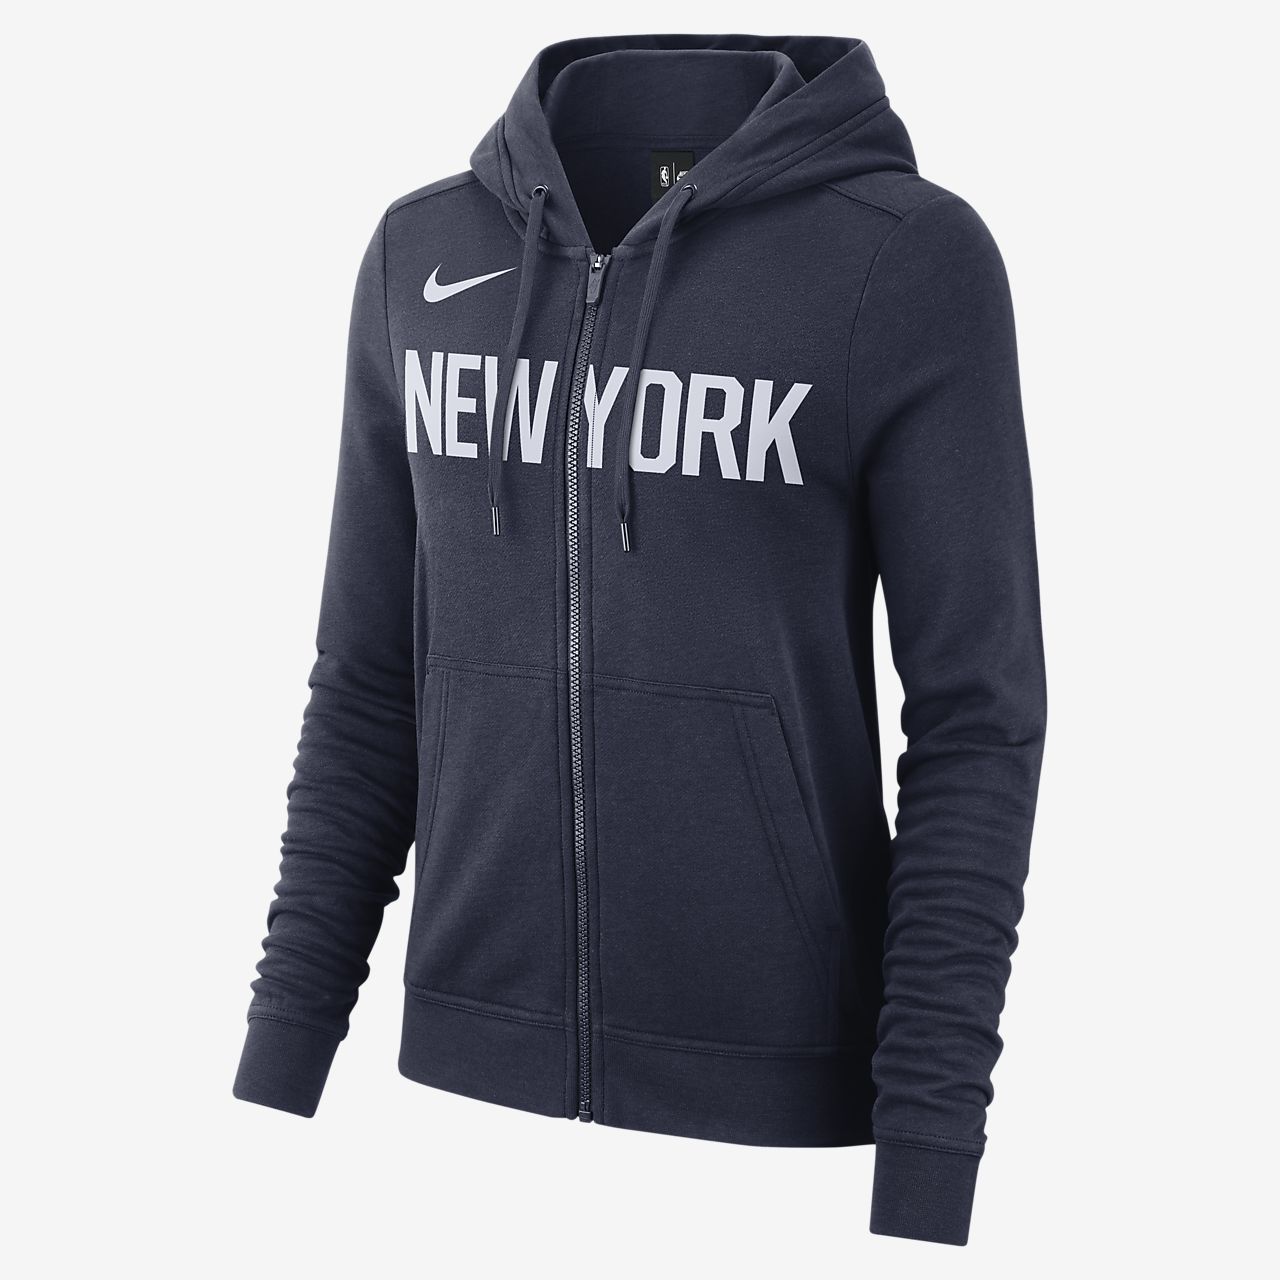 New York Knicks Nike Women's NBA Hoodie 